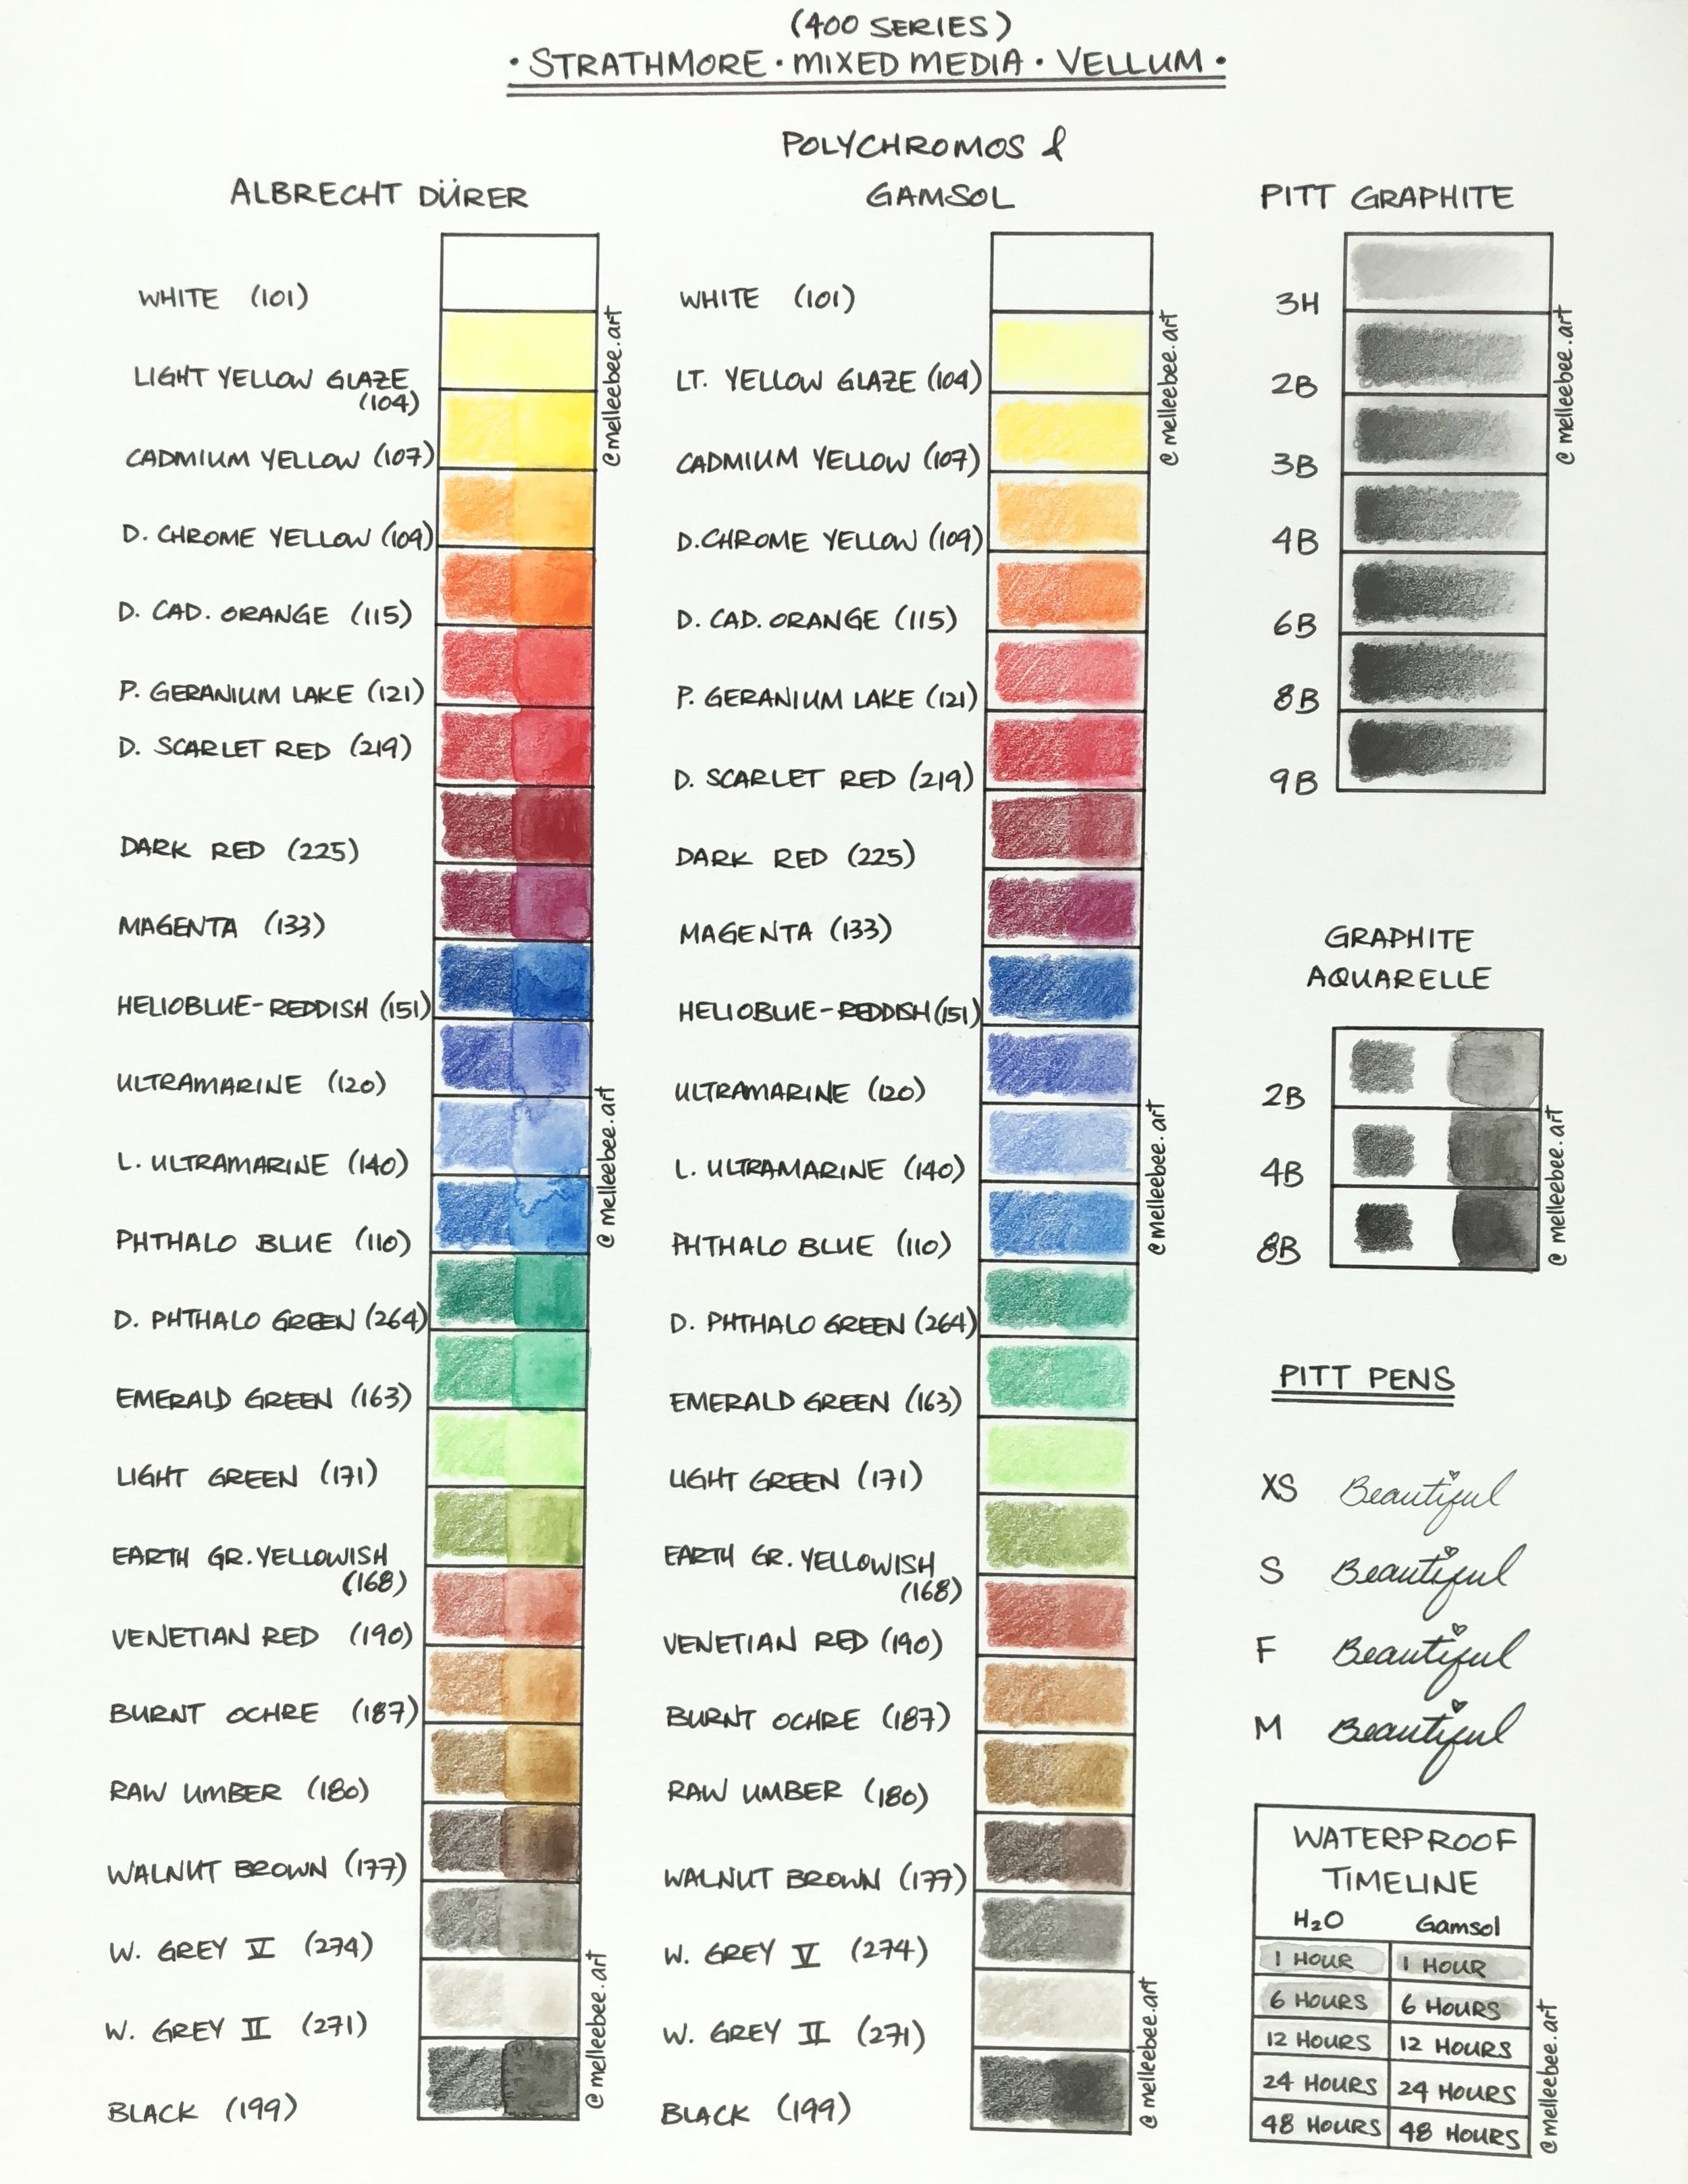 Faber Castell Art Grip Aquarelle Color Chart